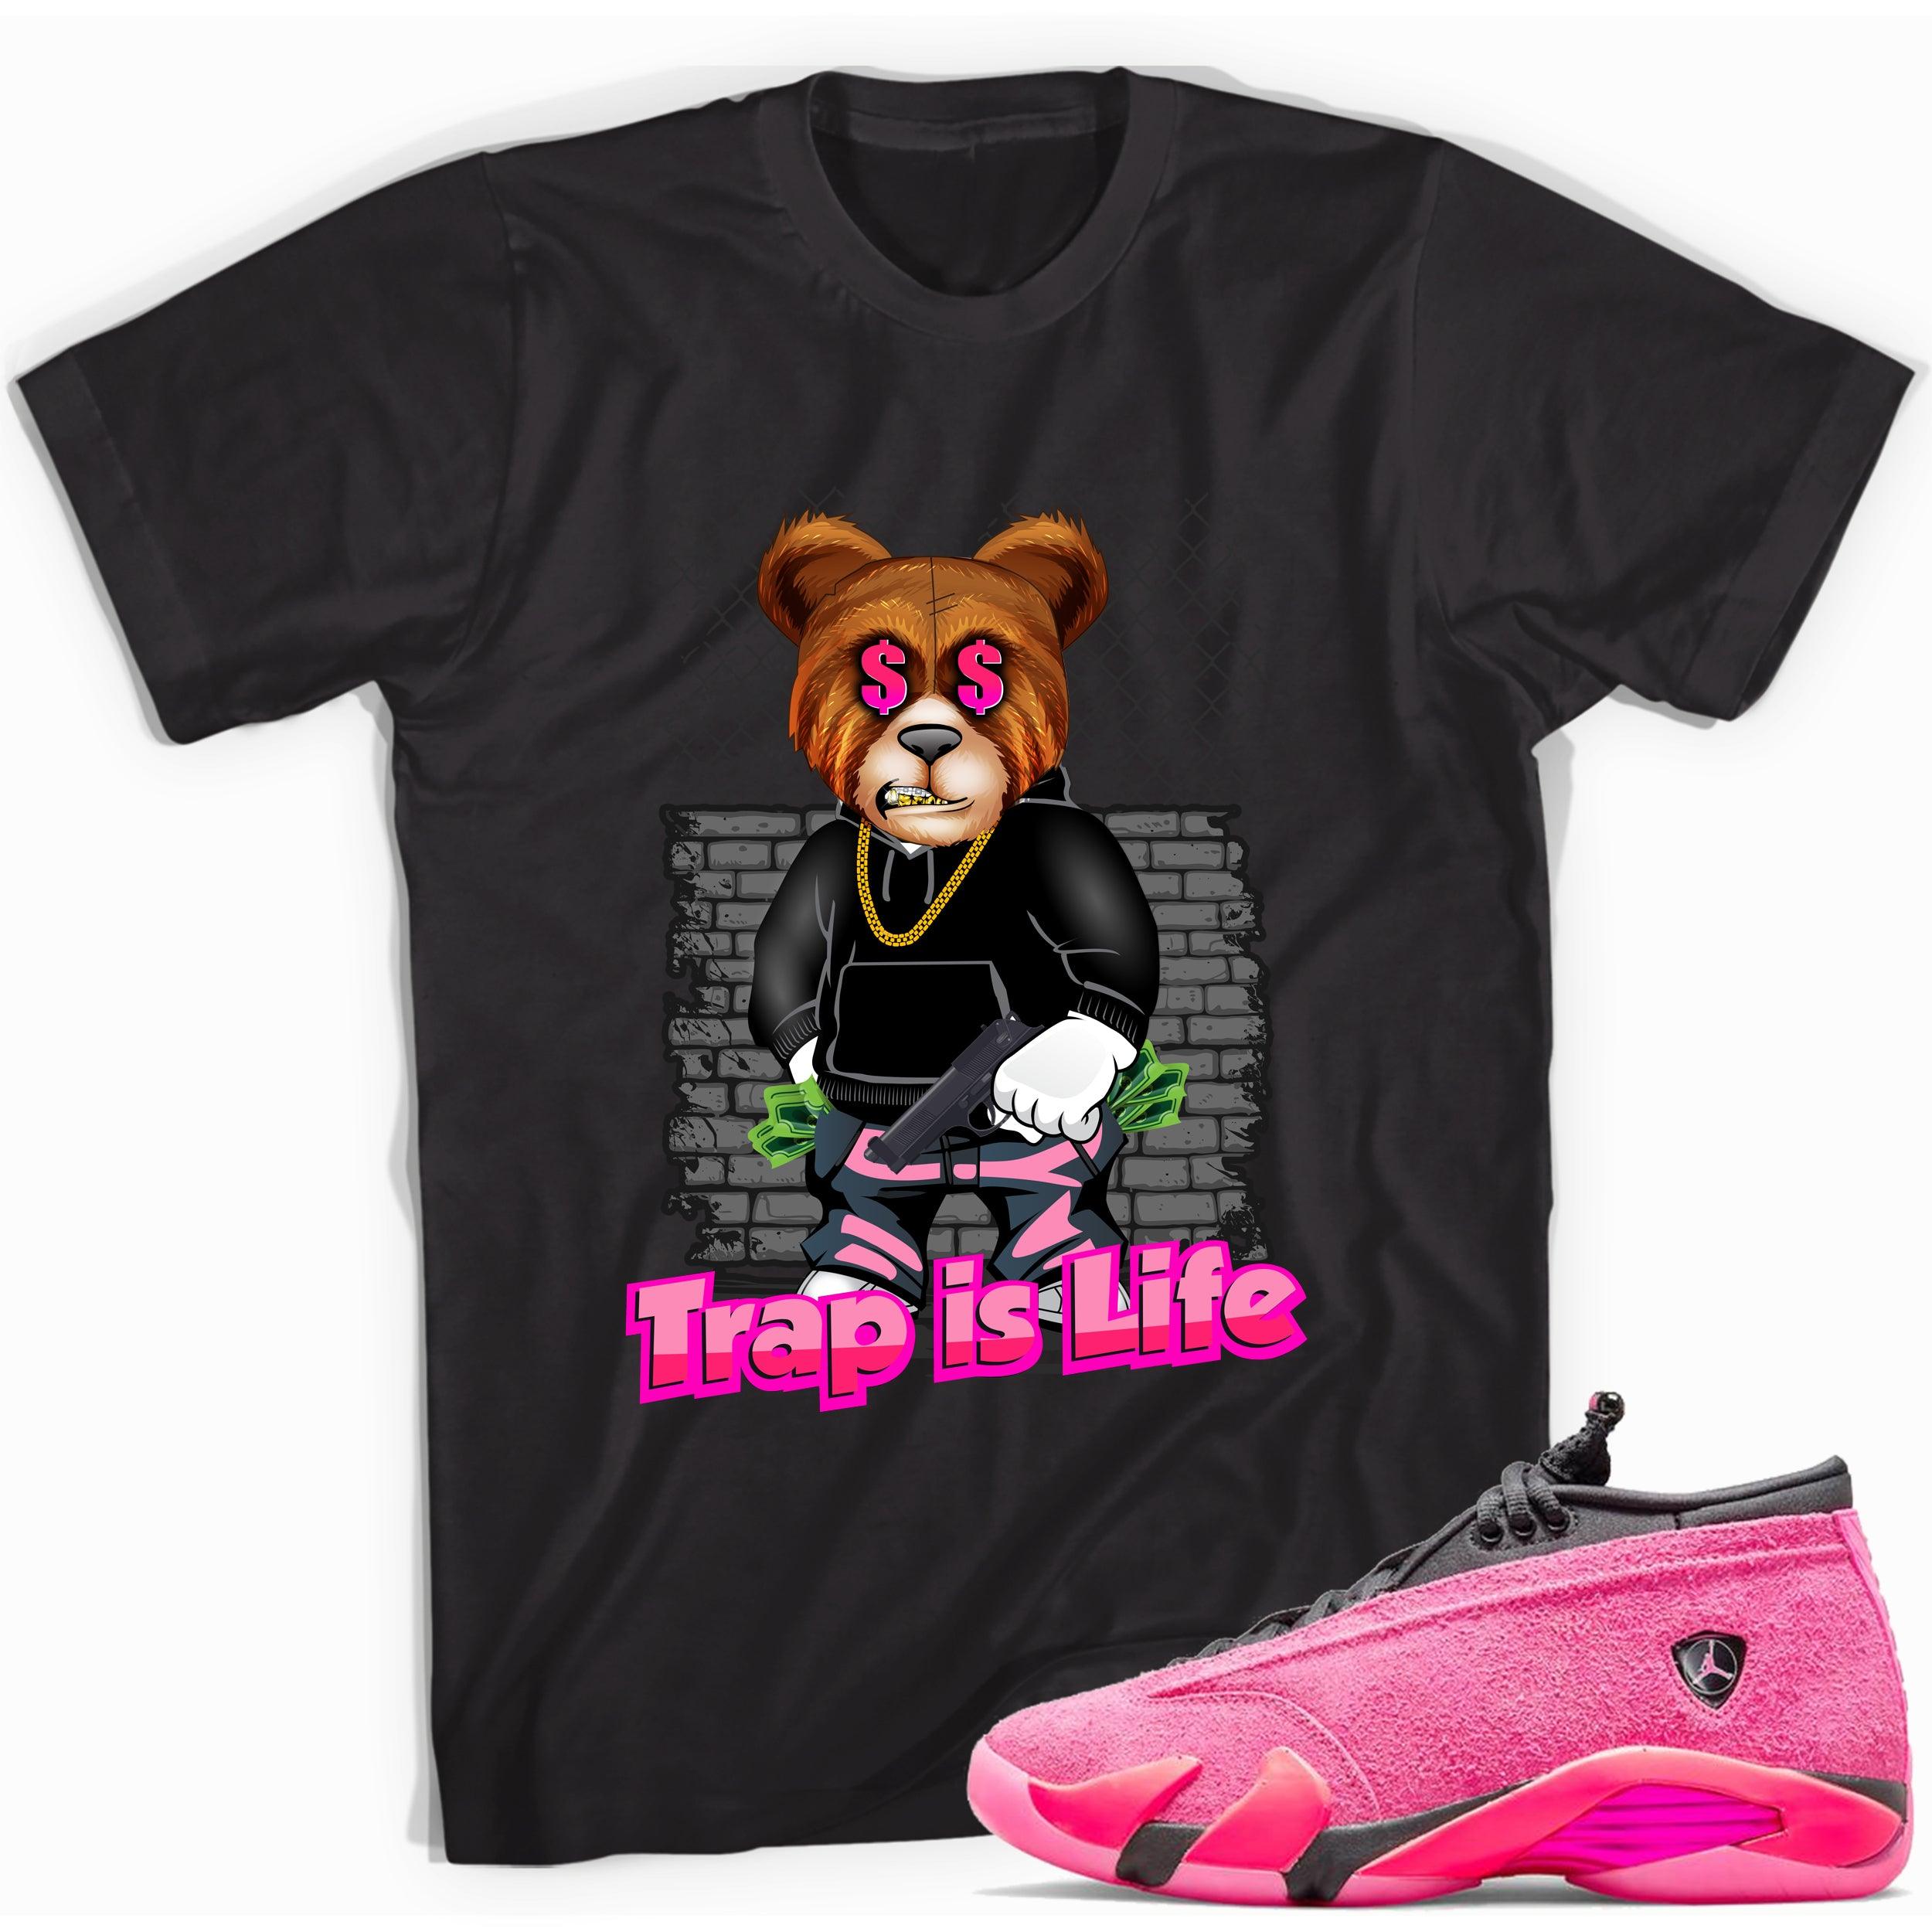 Black Trap Is Life Shirt Jordan 14s Low Shocking Pink photo